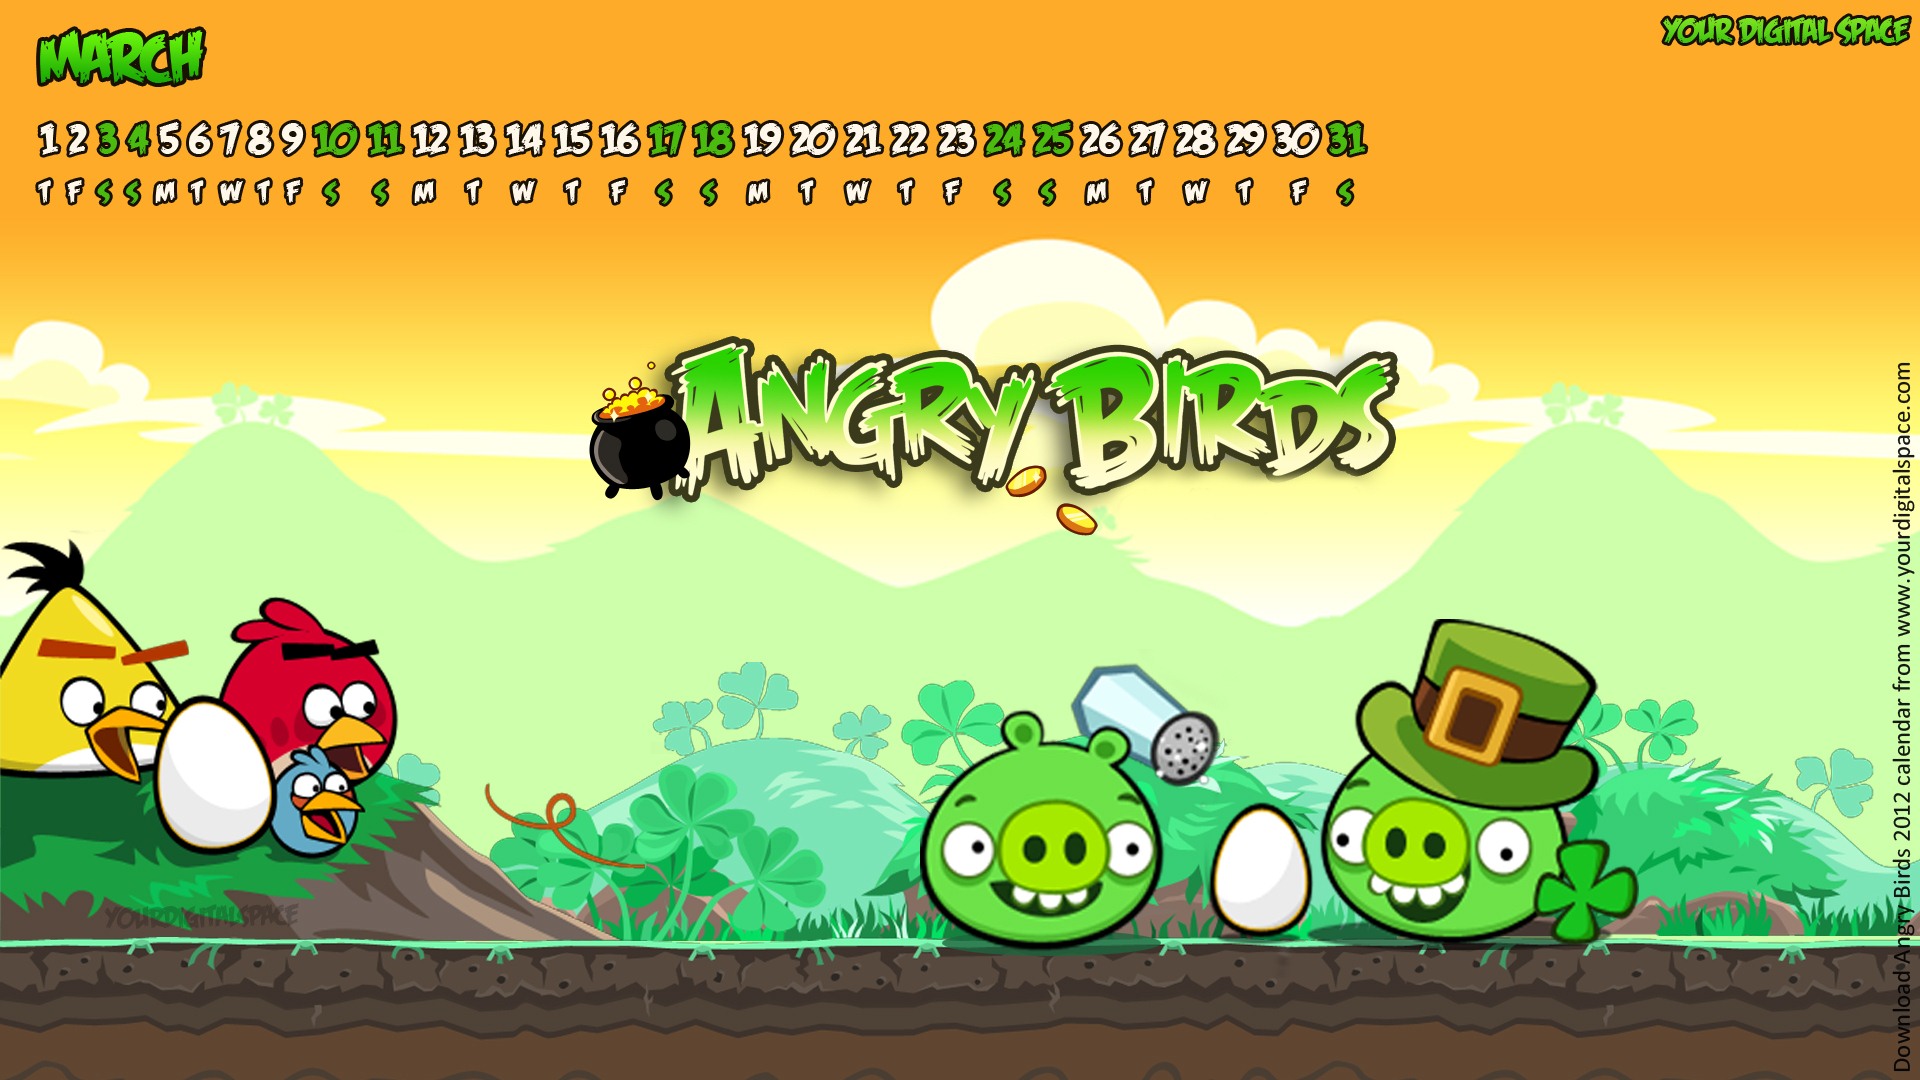 Angry Birds 2012 calendario fondos de escritorio #8 - 1920x1080